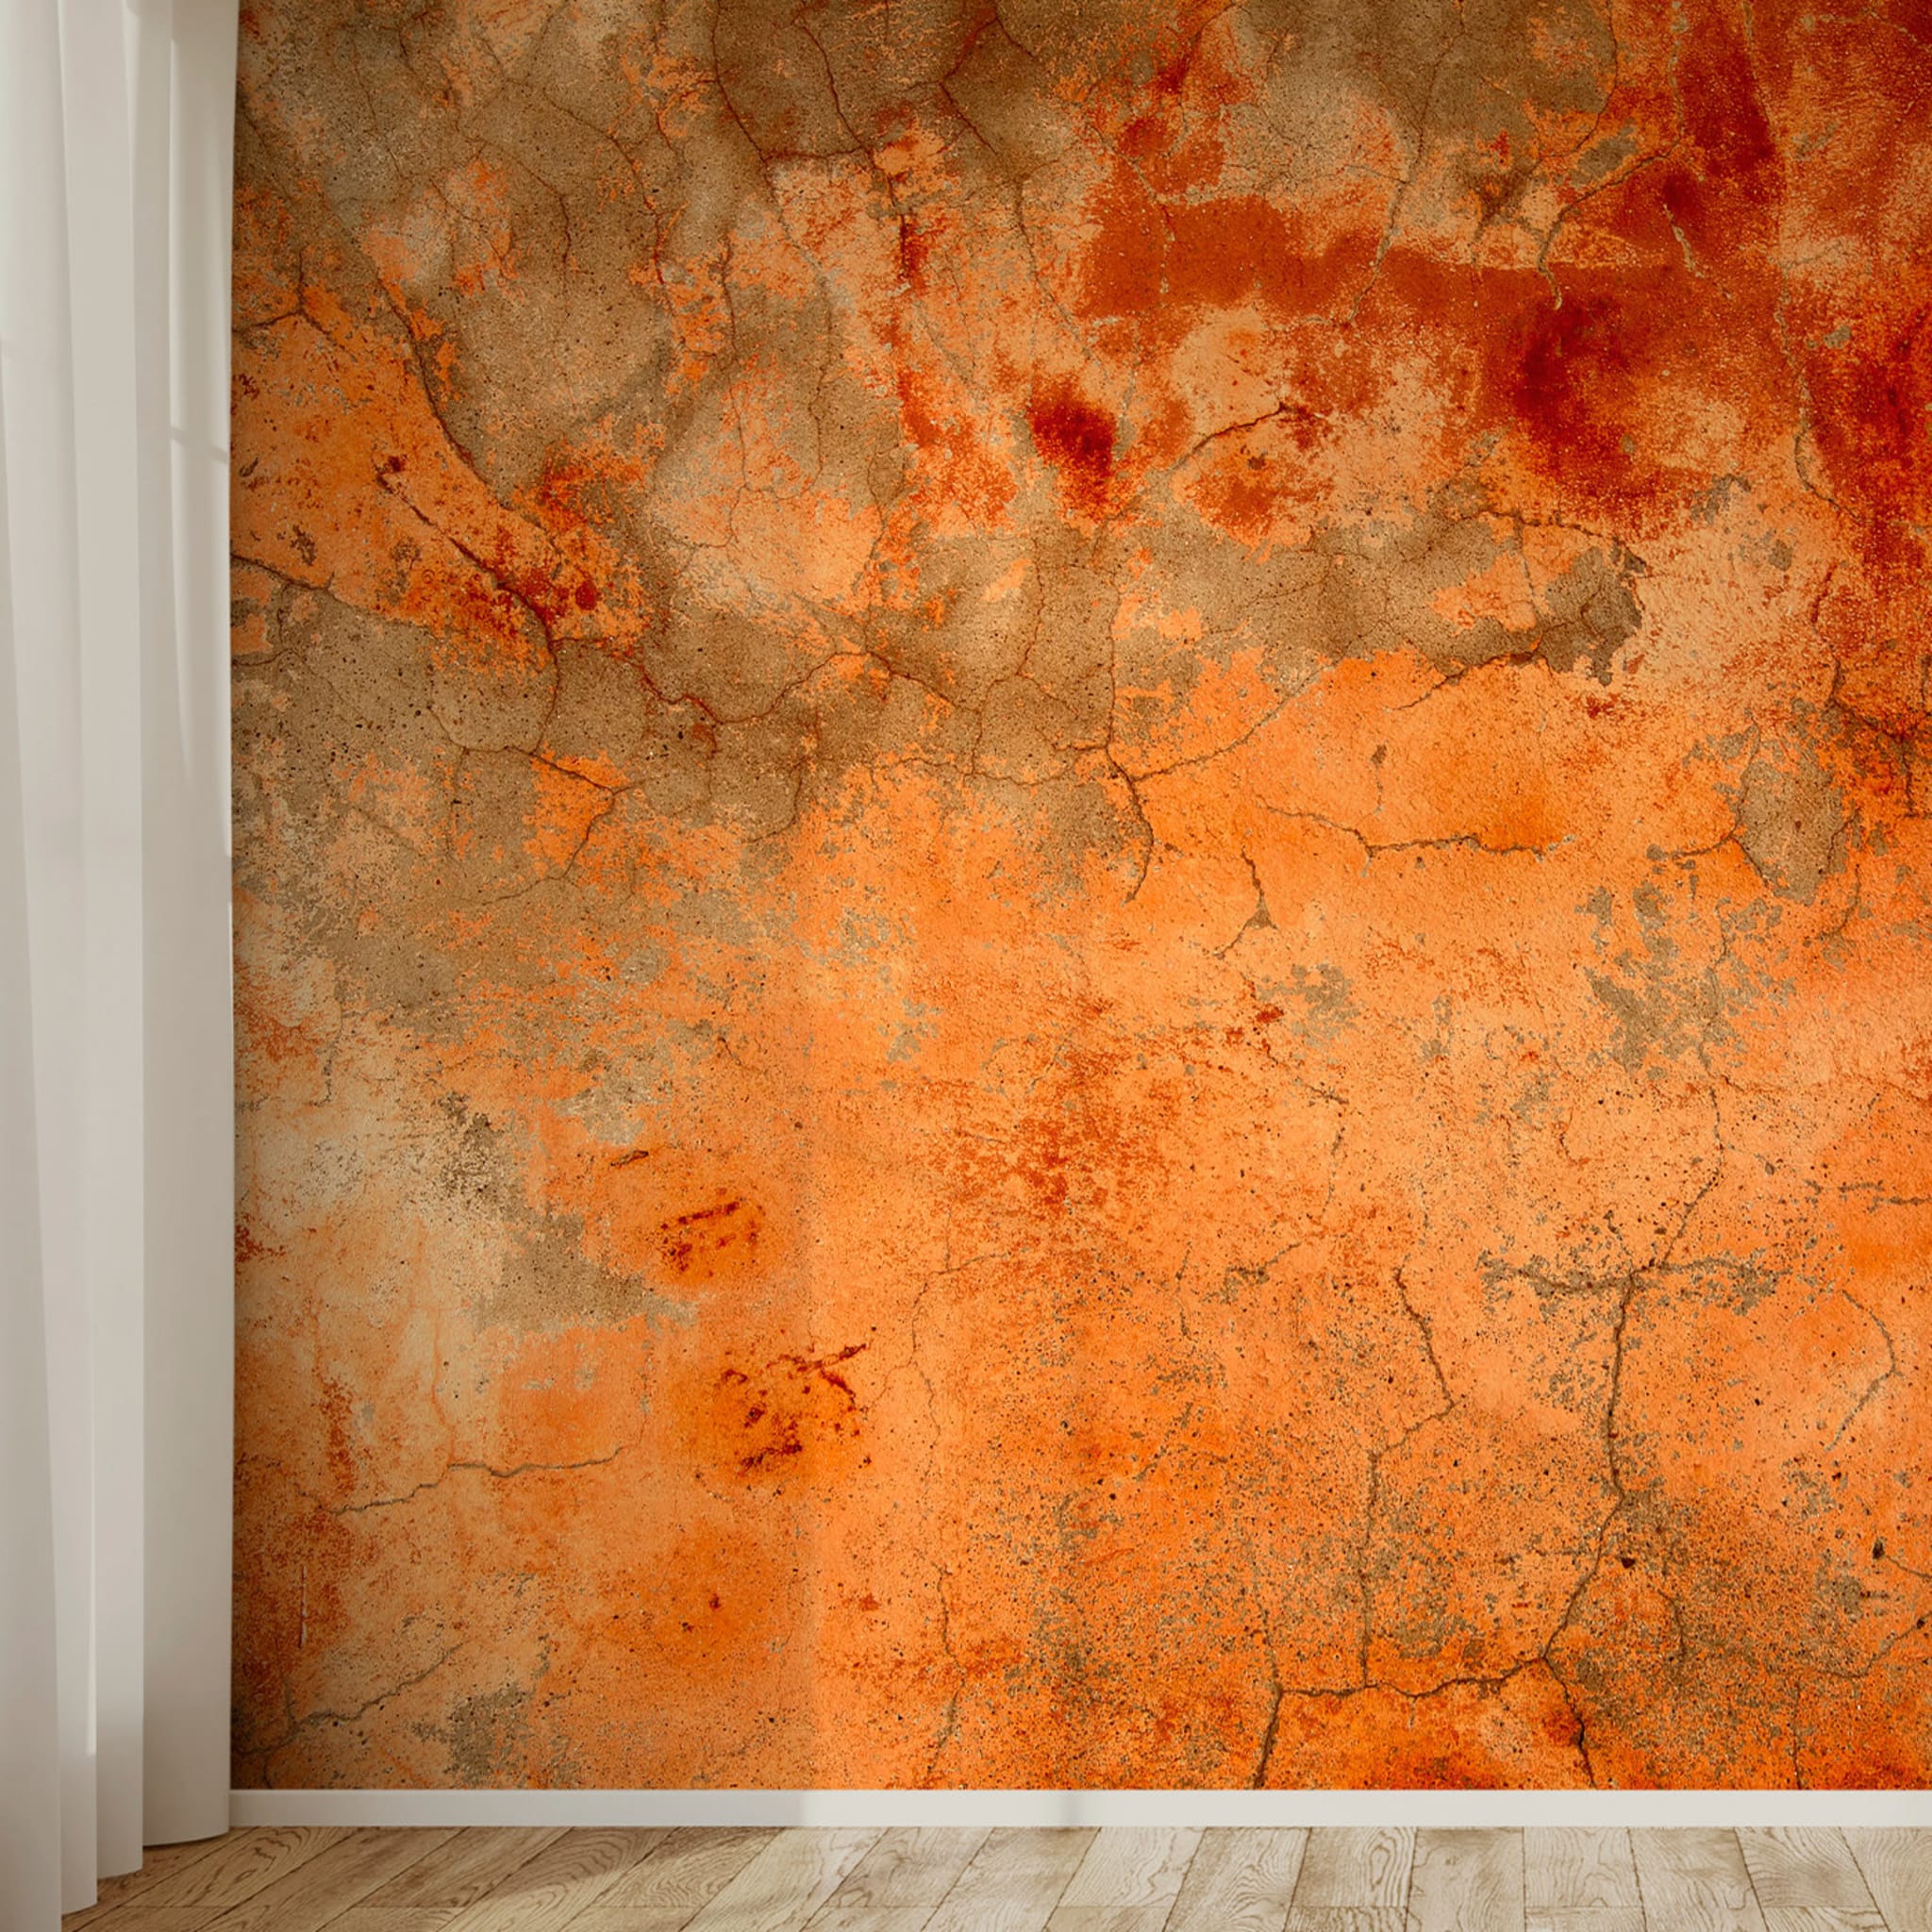 Orange Textured Wallpaper #2 - Alternative view 1